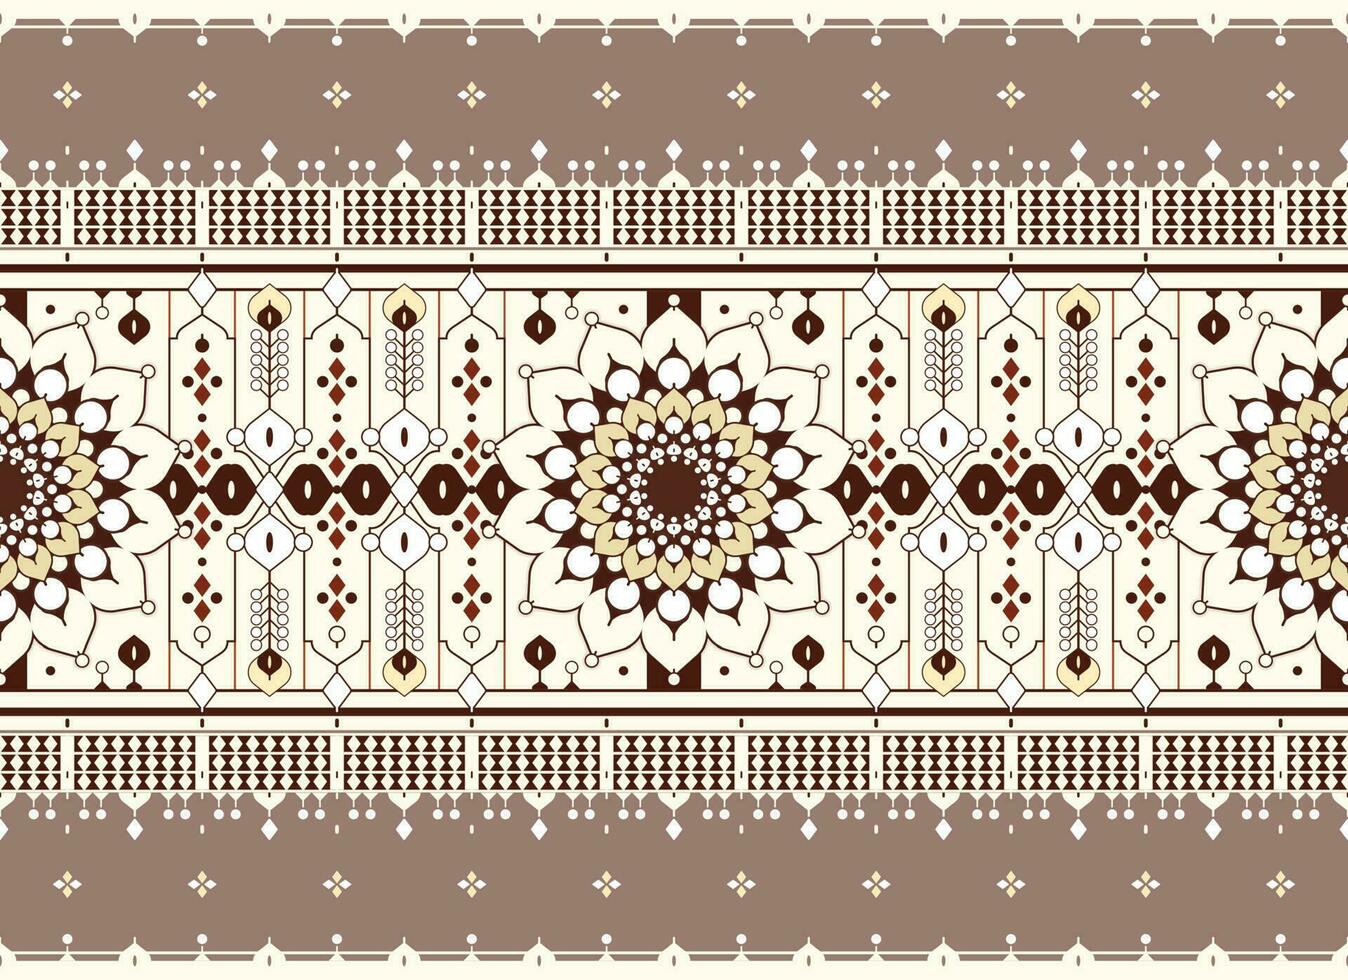 meetkundig en mandala etnisch kleding stof patroon voor kleding tapijt behang achtergrond omhulsel enz. vector